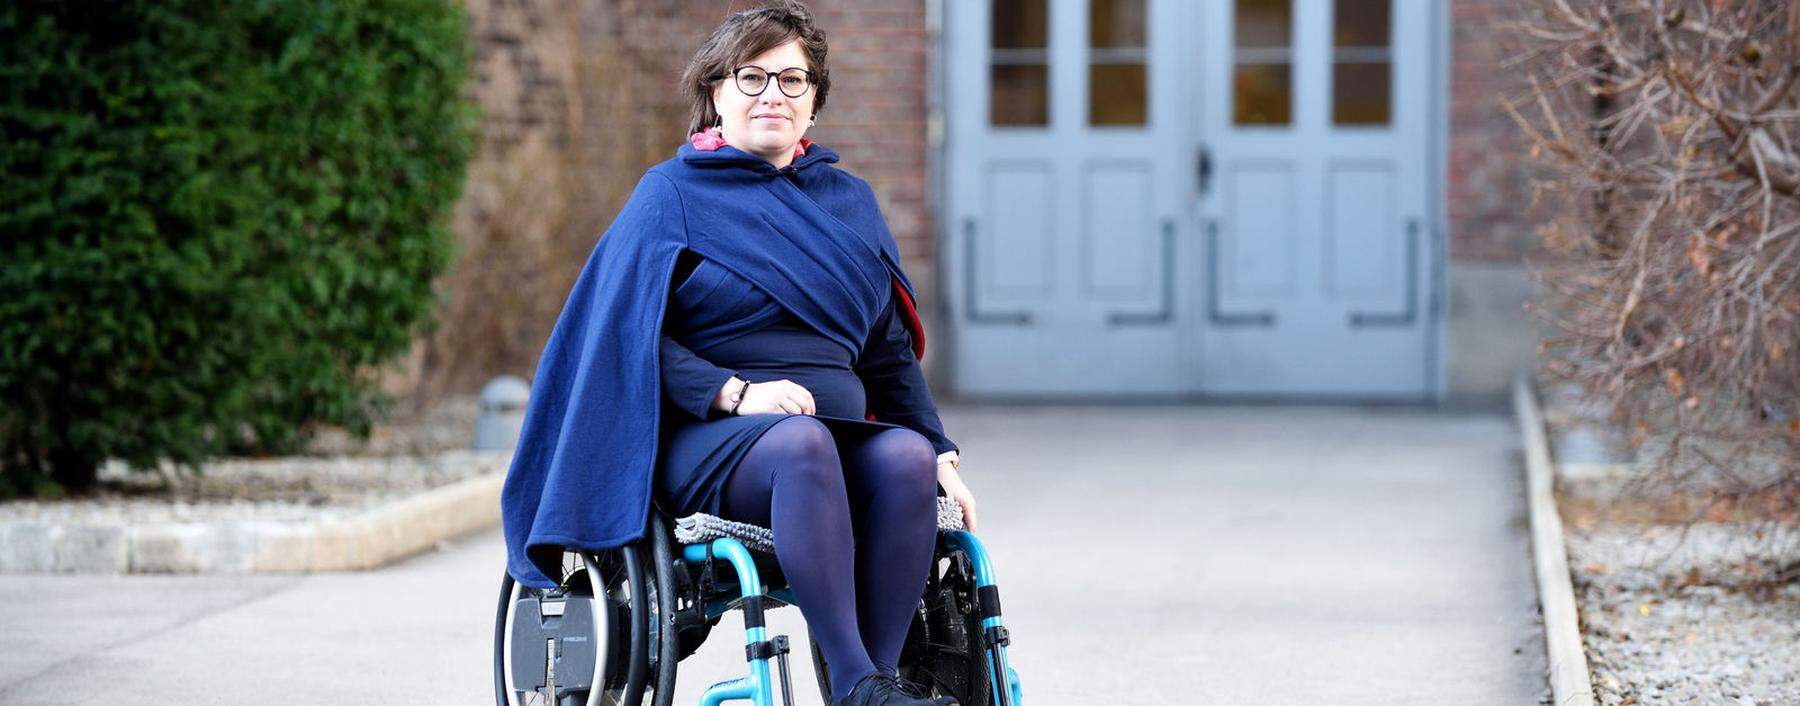 Yvonne Anreitter erkrankte im November 2020 an Corona. Gesund ist sie bis heute nicht. Im Gegenteil: Ihr Zustand hat sich seither verschlechtert, sie braucht einen elektrischen Rollstuhl. Dennoch - oder genau deswegen - setzt sie sich für mehr Aufklärung ein. 